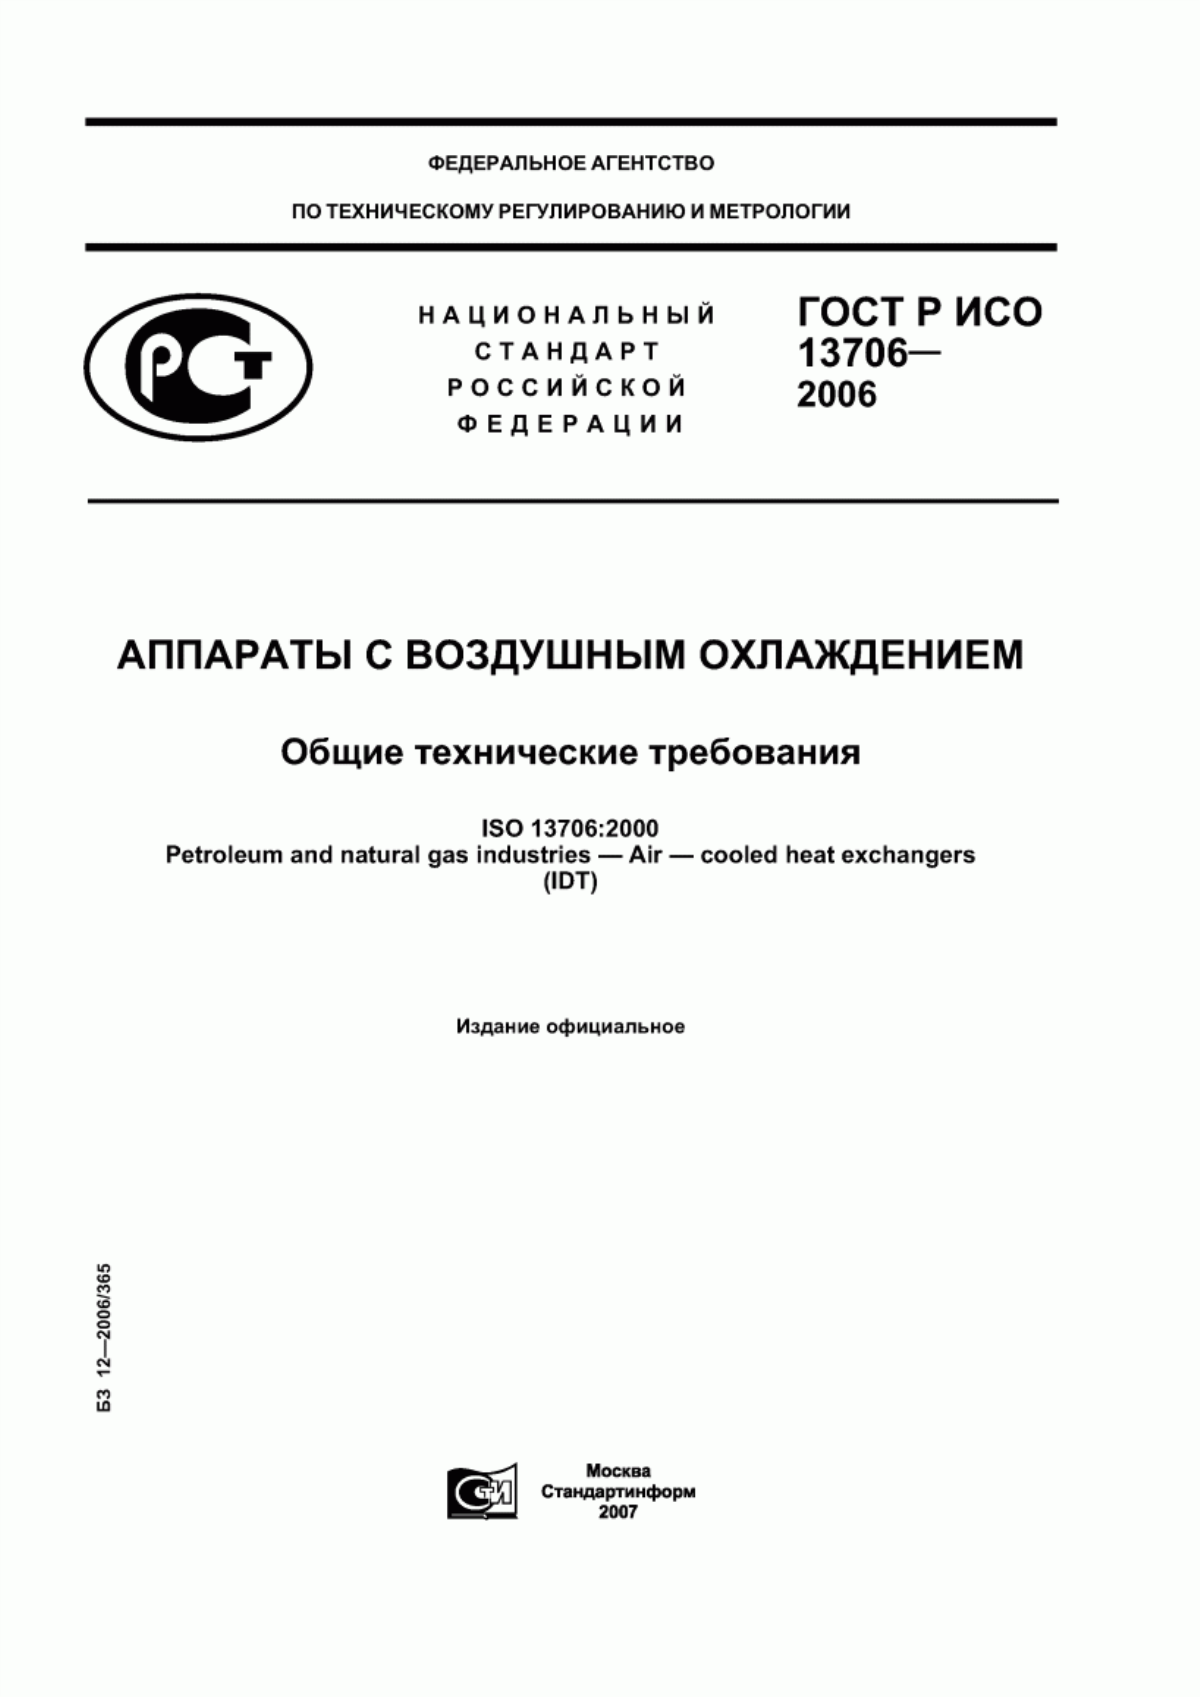 ГОСТ Р ИСО 13706-2006 Аппараты с воздушным охлаждением. Общие технические требования